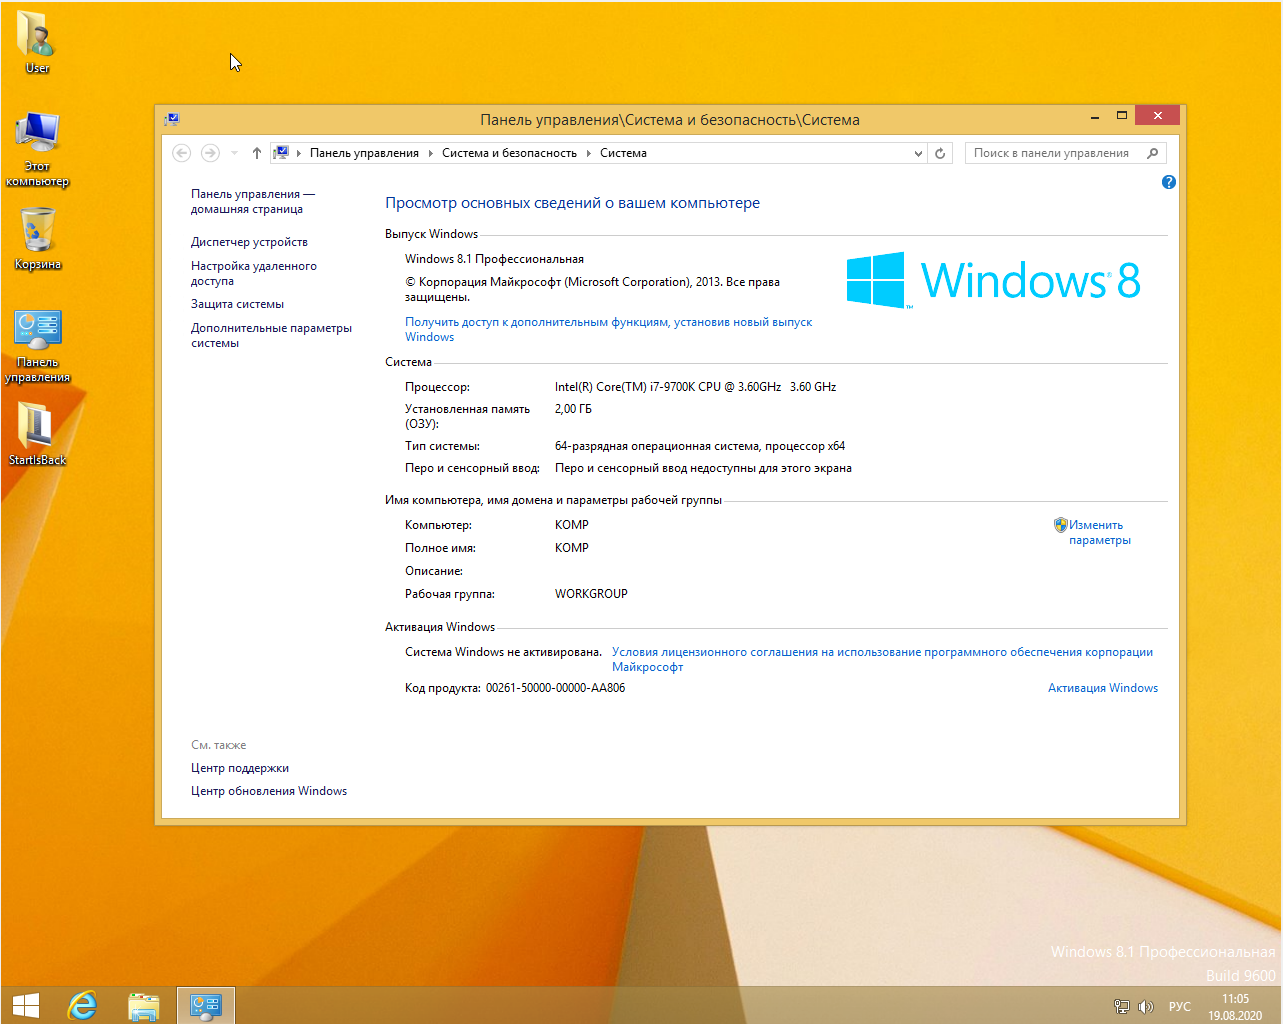 windows 8 x64 iso download torrent